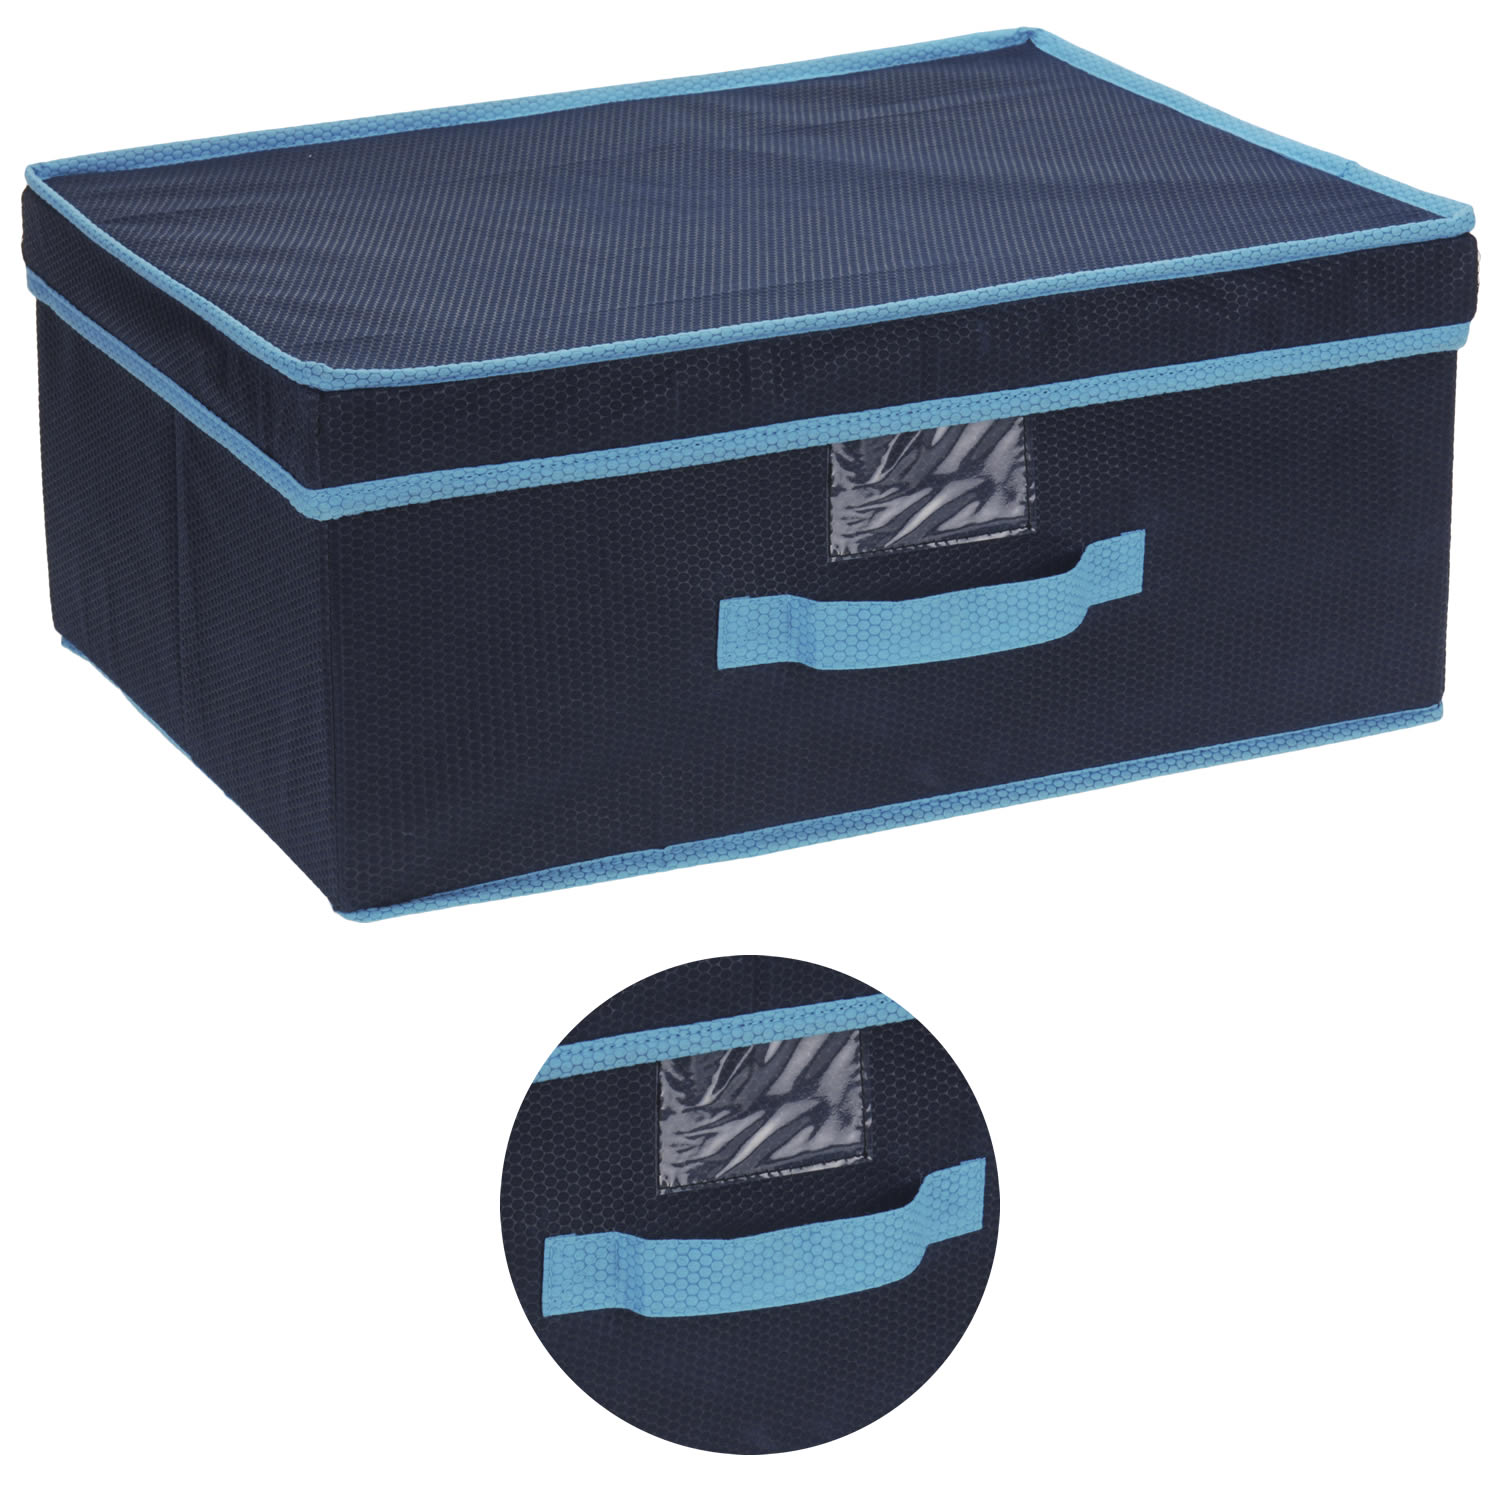 1~3er Set Aufbewahrungsbox Regalkorb Stoff Box Aufbewahrungskorb Ordnungsbox DHL